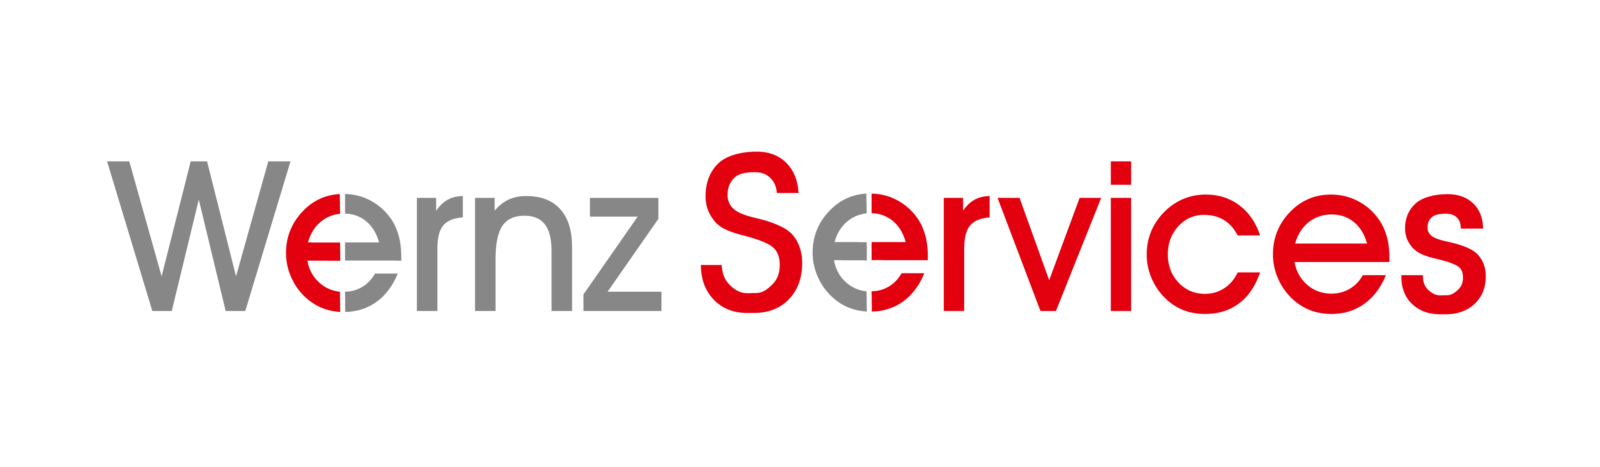 Wernz Services Logo-01